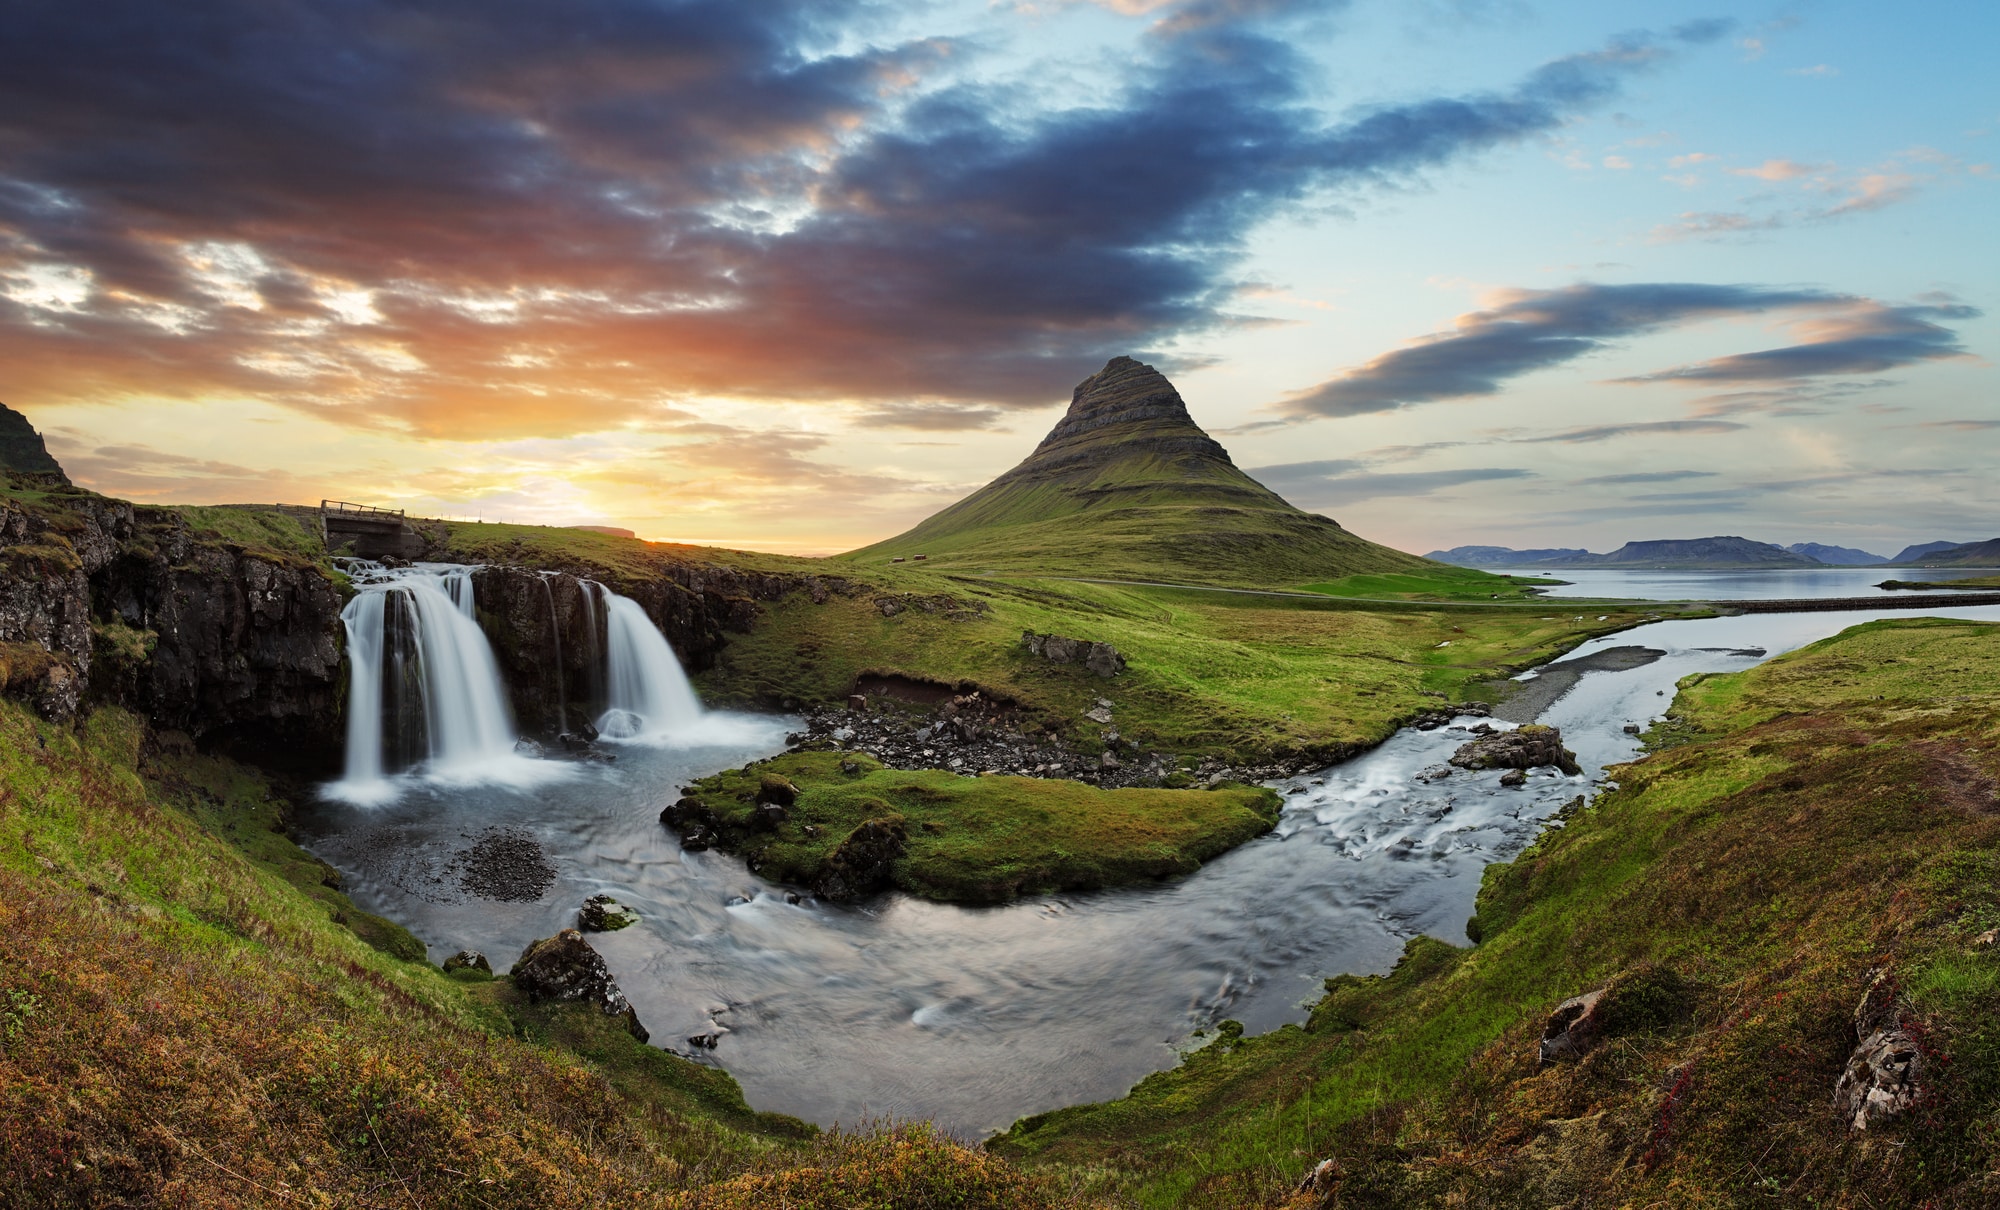 5 powodów, dla których warto kupować i korzystać z serwerów proxy z Islandii